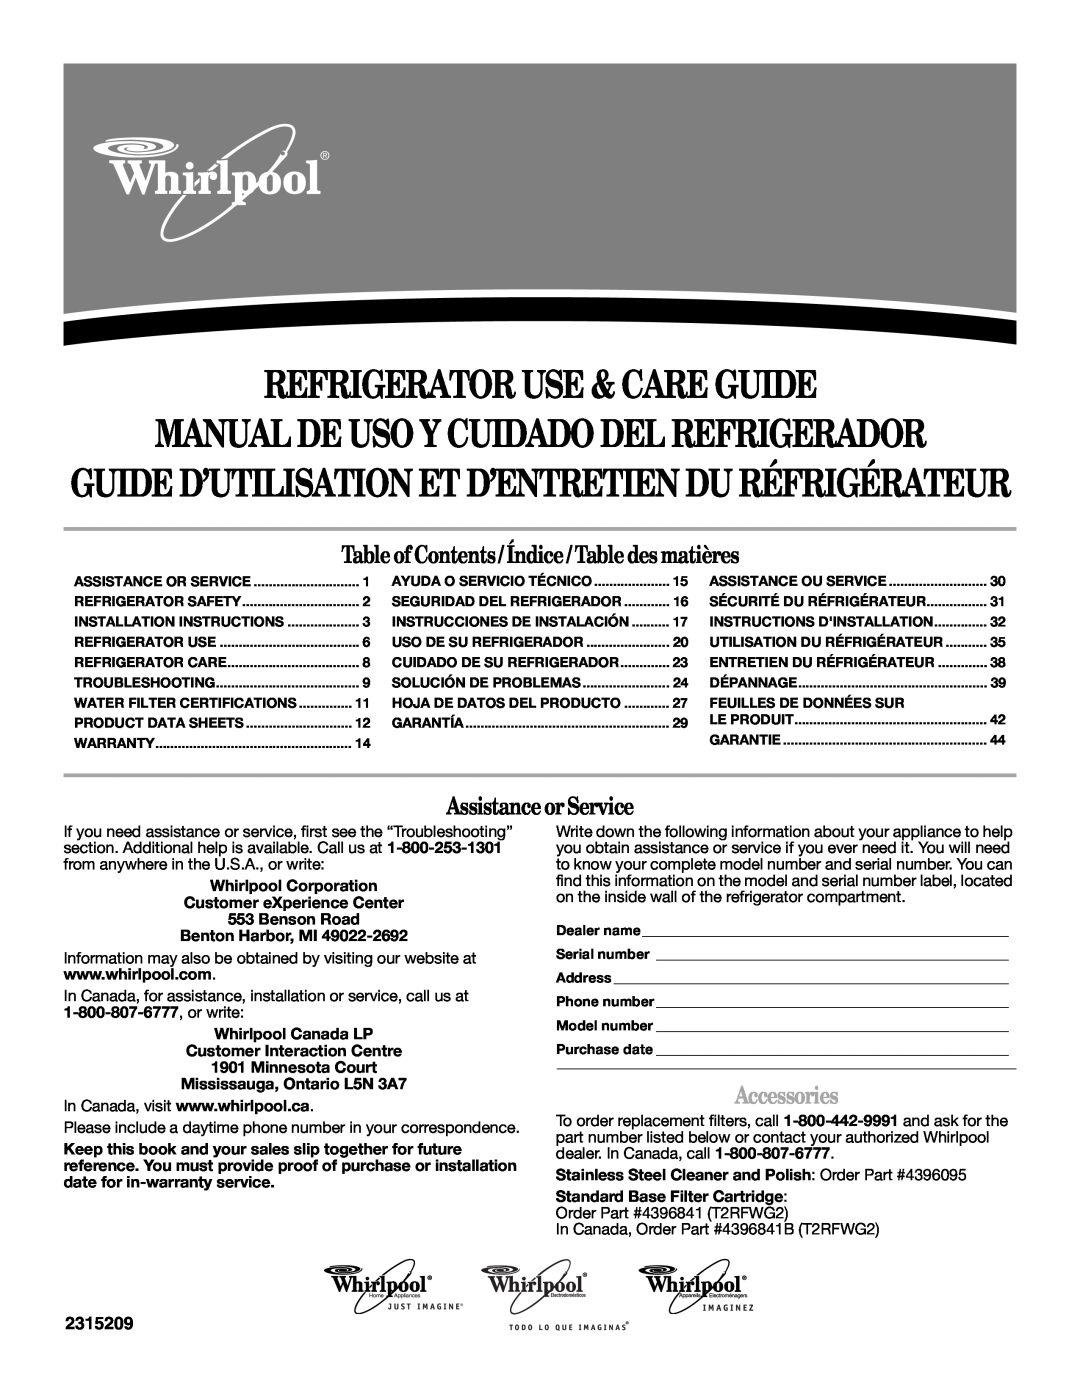 Whirlpool 2315209 warranty Manualde Uso Y Cuidado Del Refrigerador, Guide D’Utilisation Et D’Entretien Du Réfrigérateur 